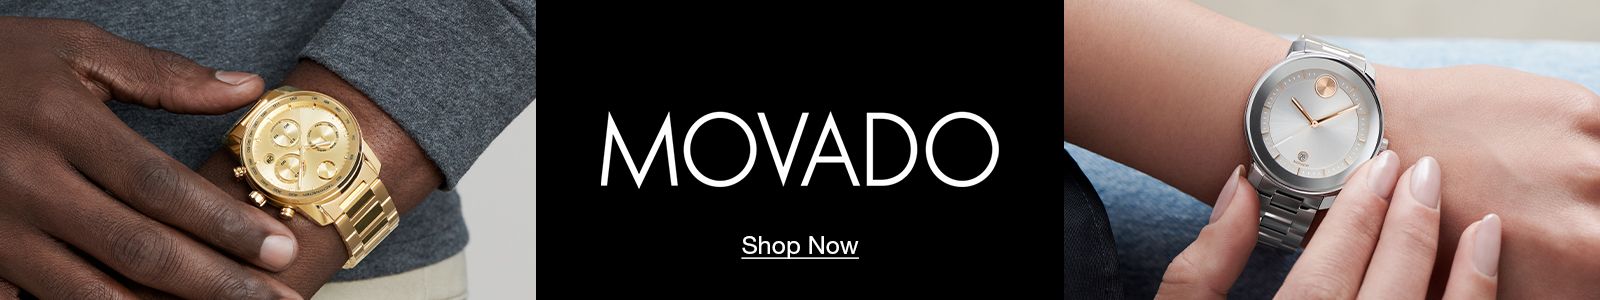 Movado, Shop Now